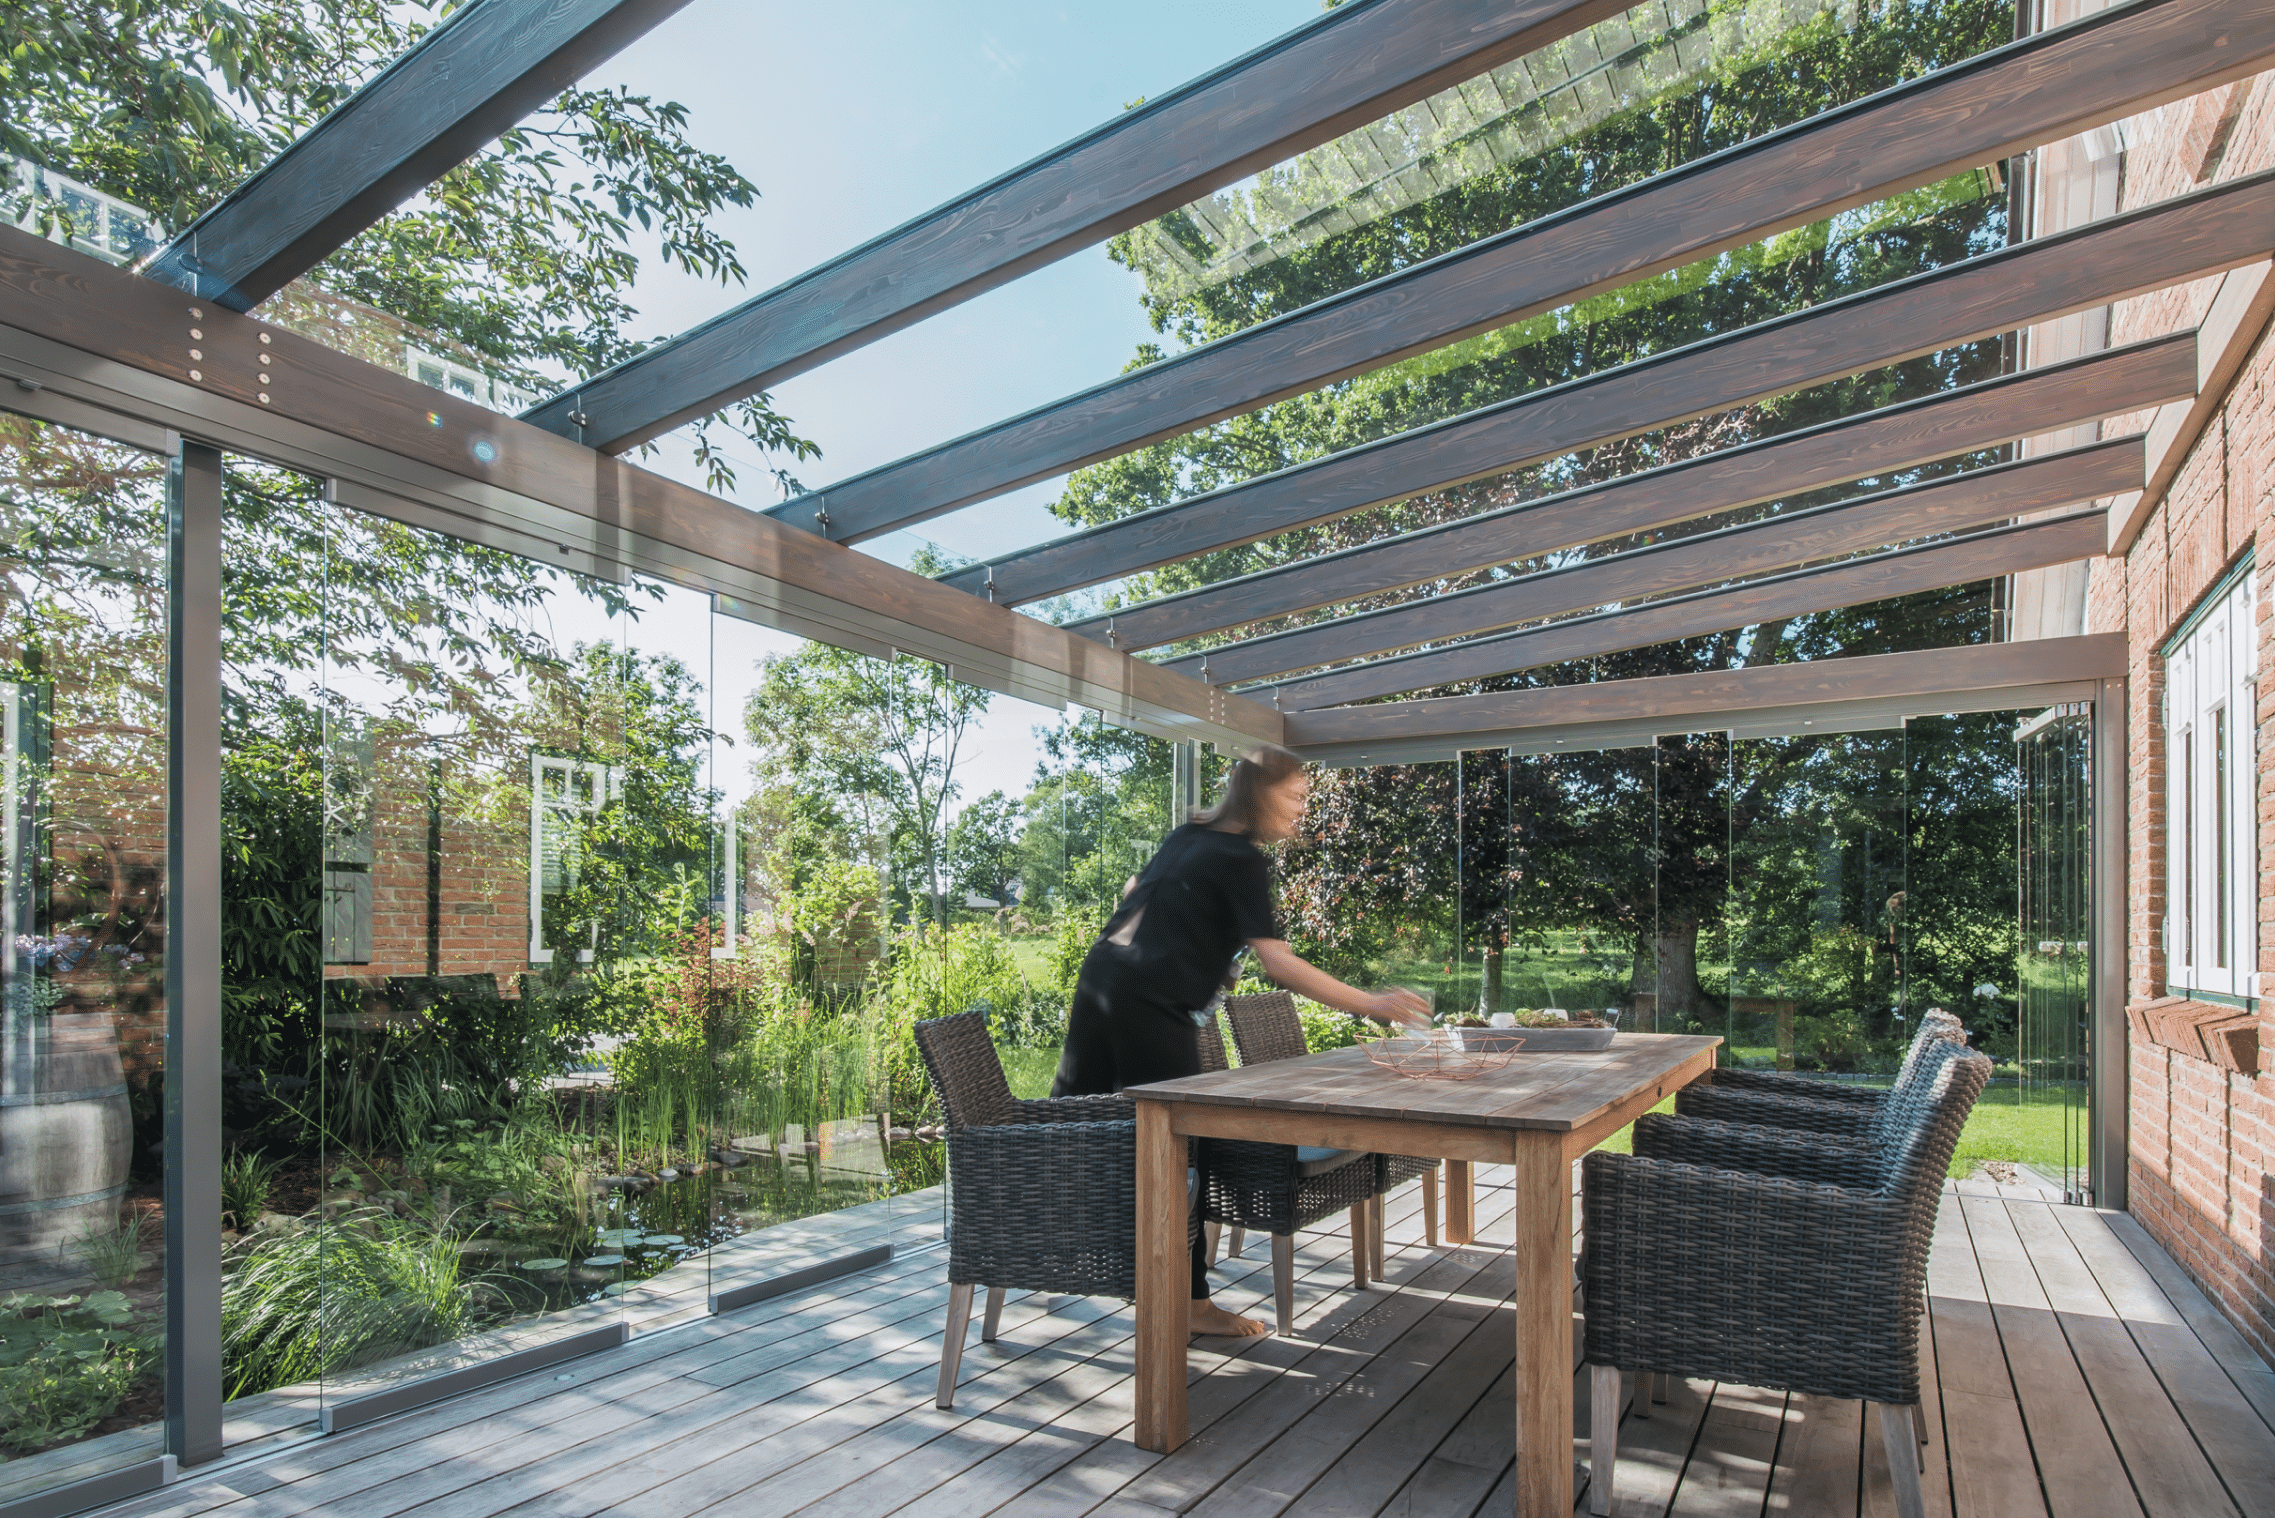 Garten mit Teich und rundum verglastem Wintergarten mit rahmenfreien Solarlux Schiebetüren und Glasdach.